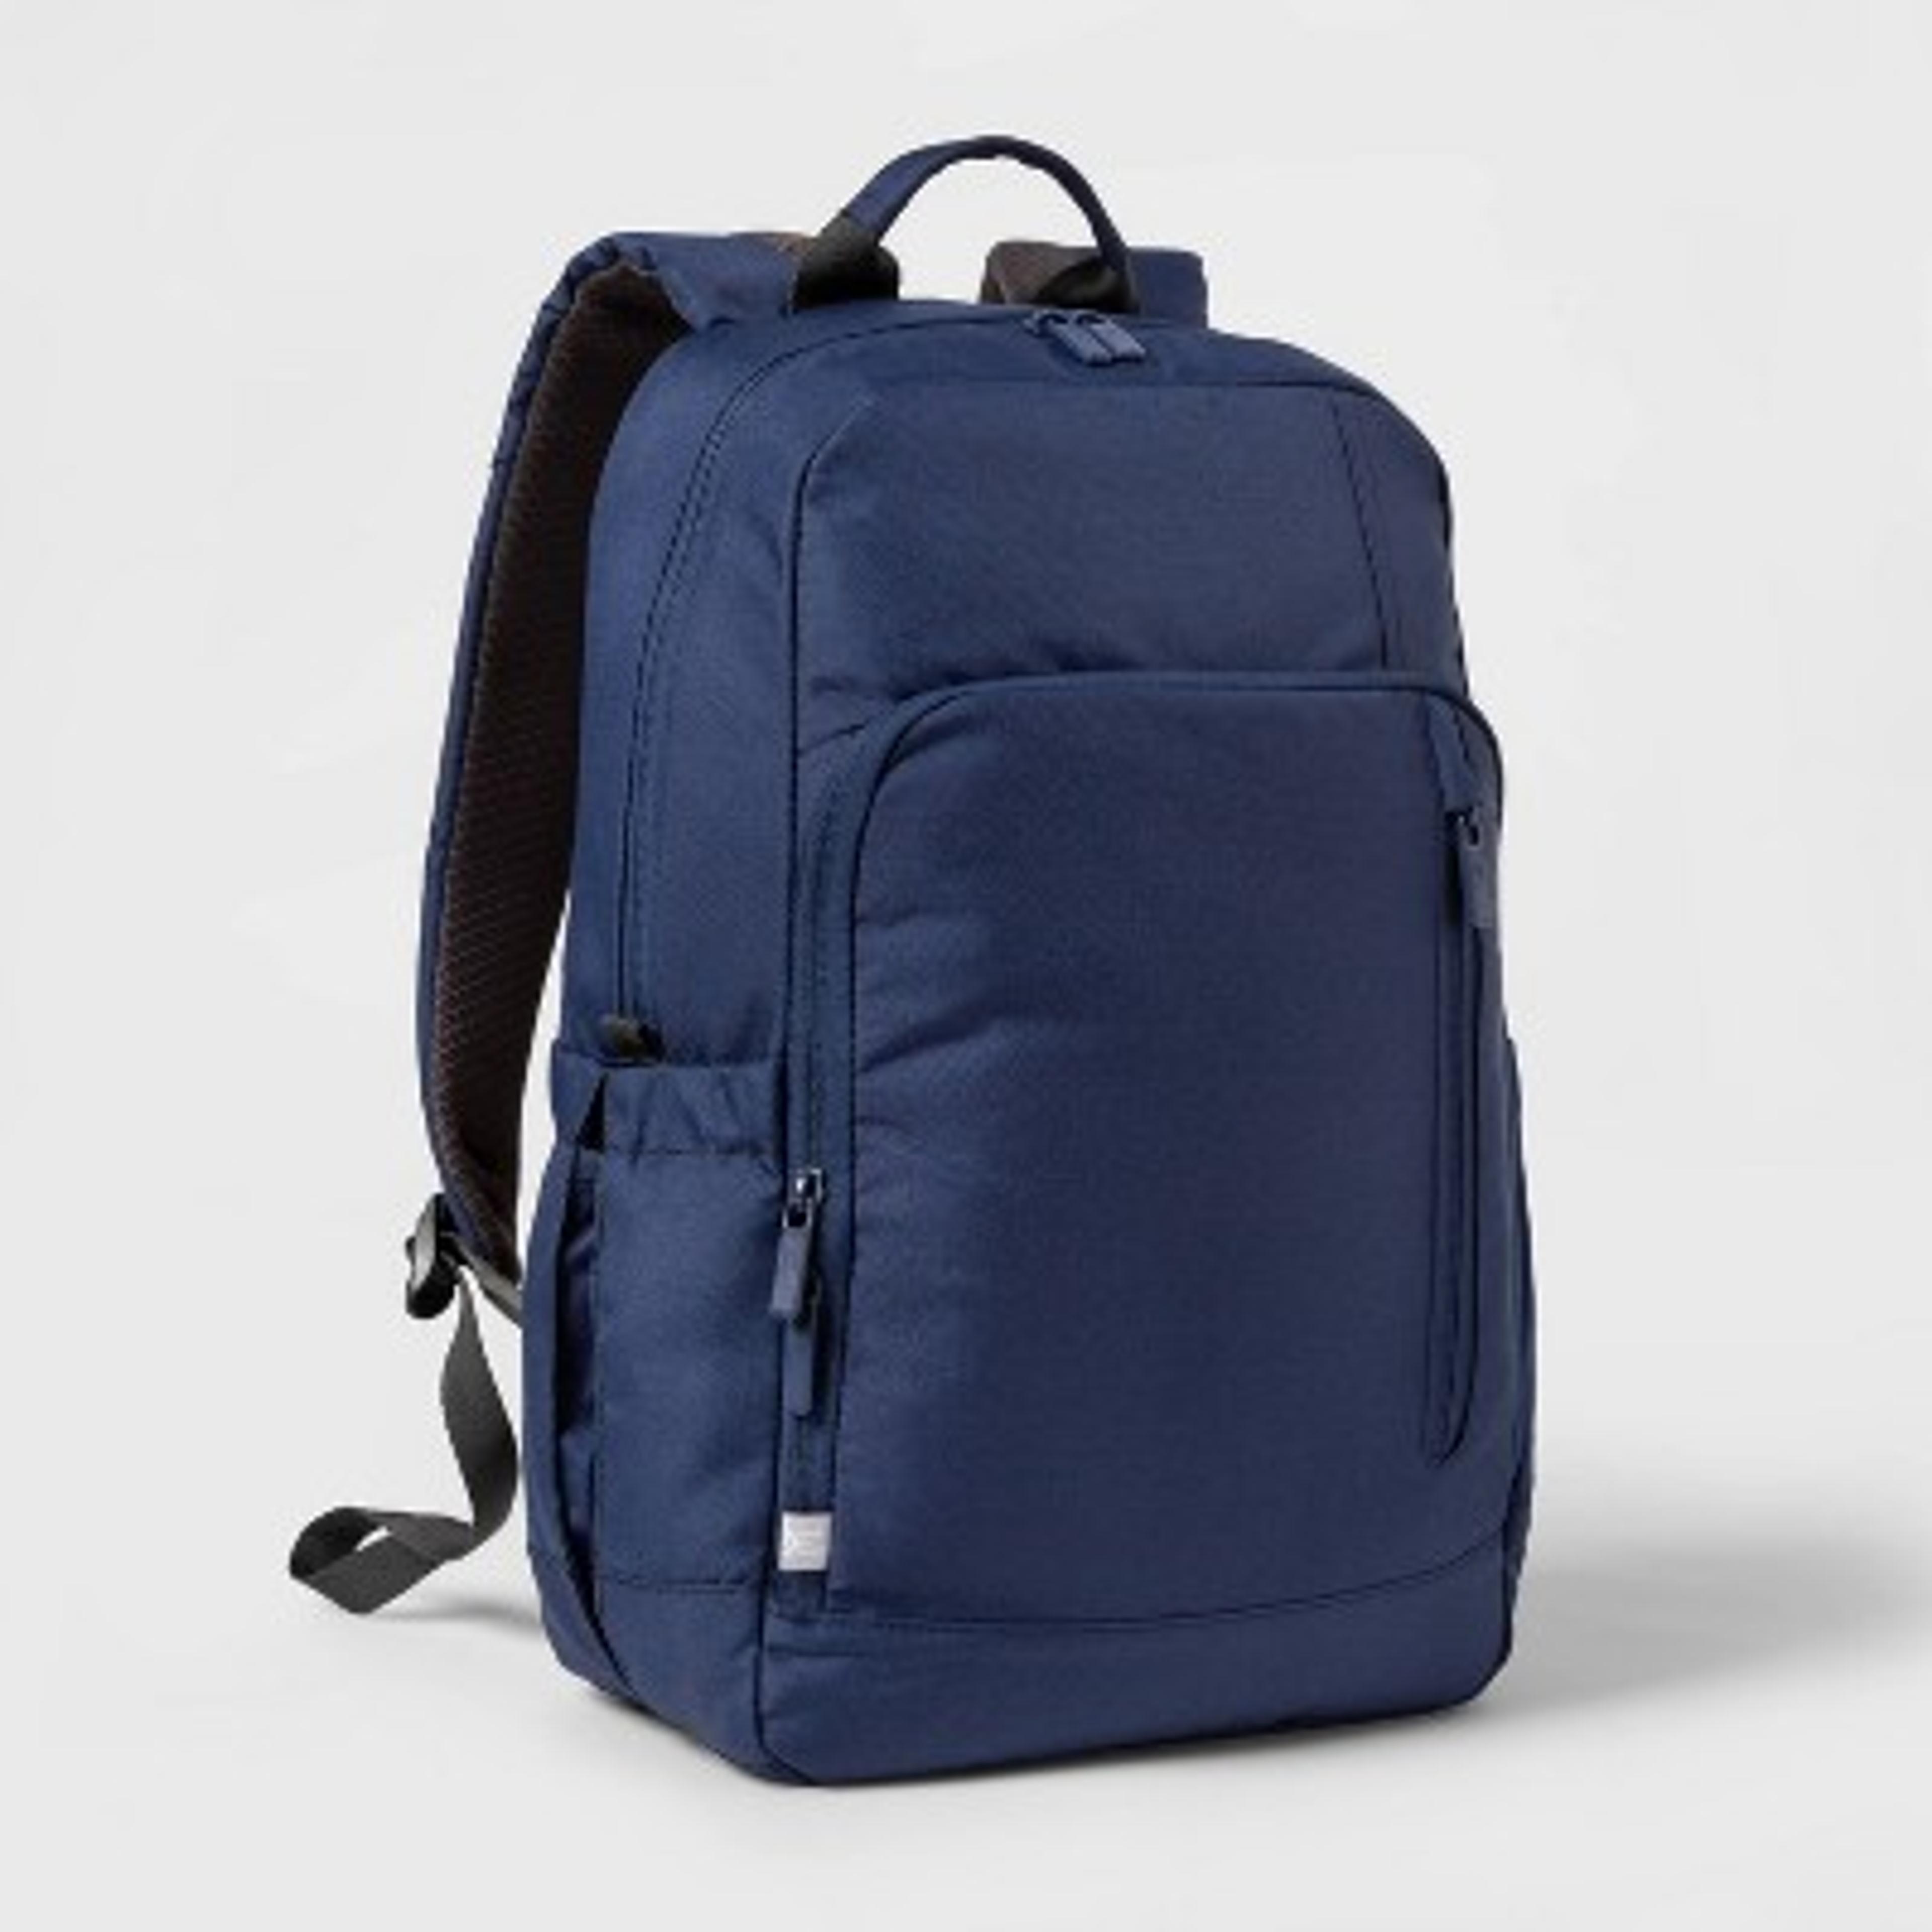 Basic Backpack Blue - Made By Design™ : Target